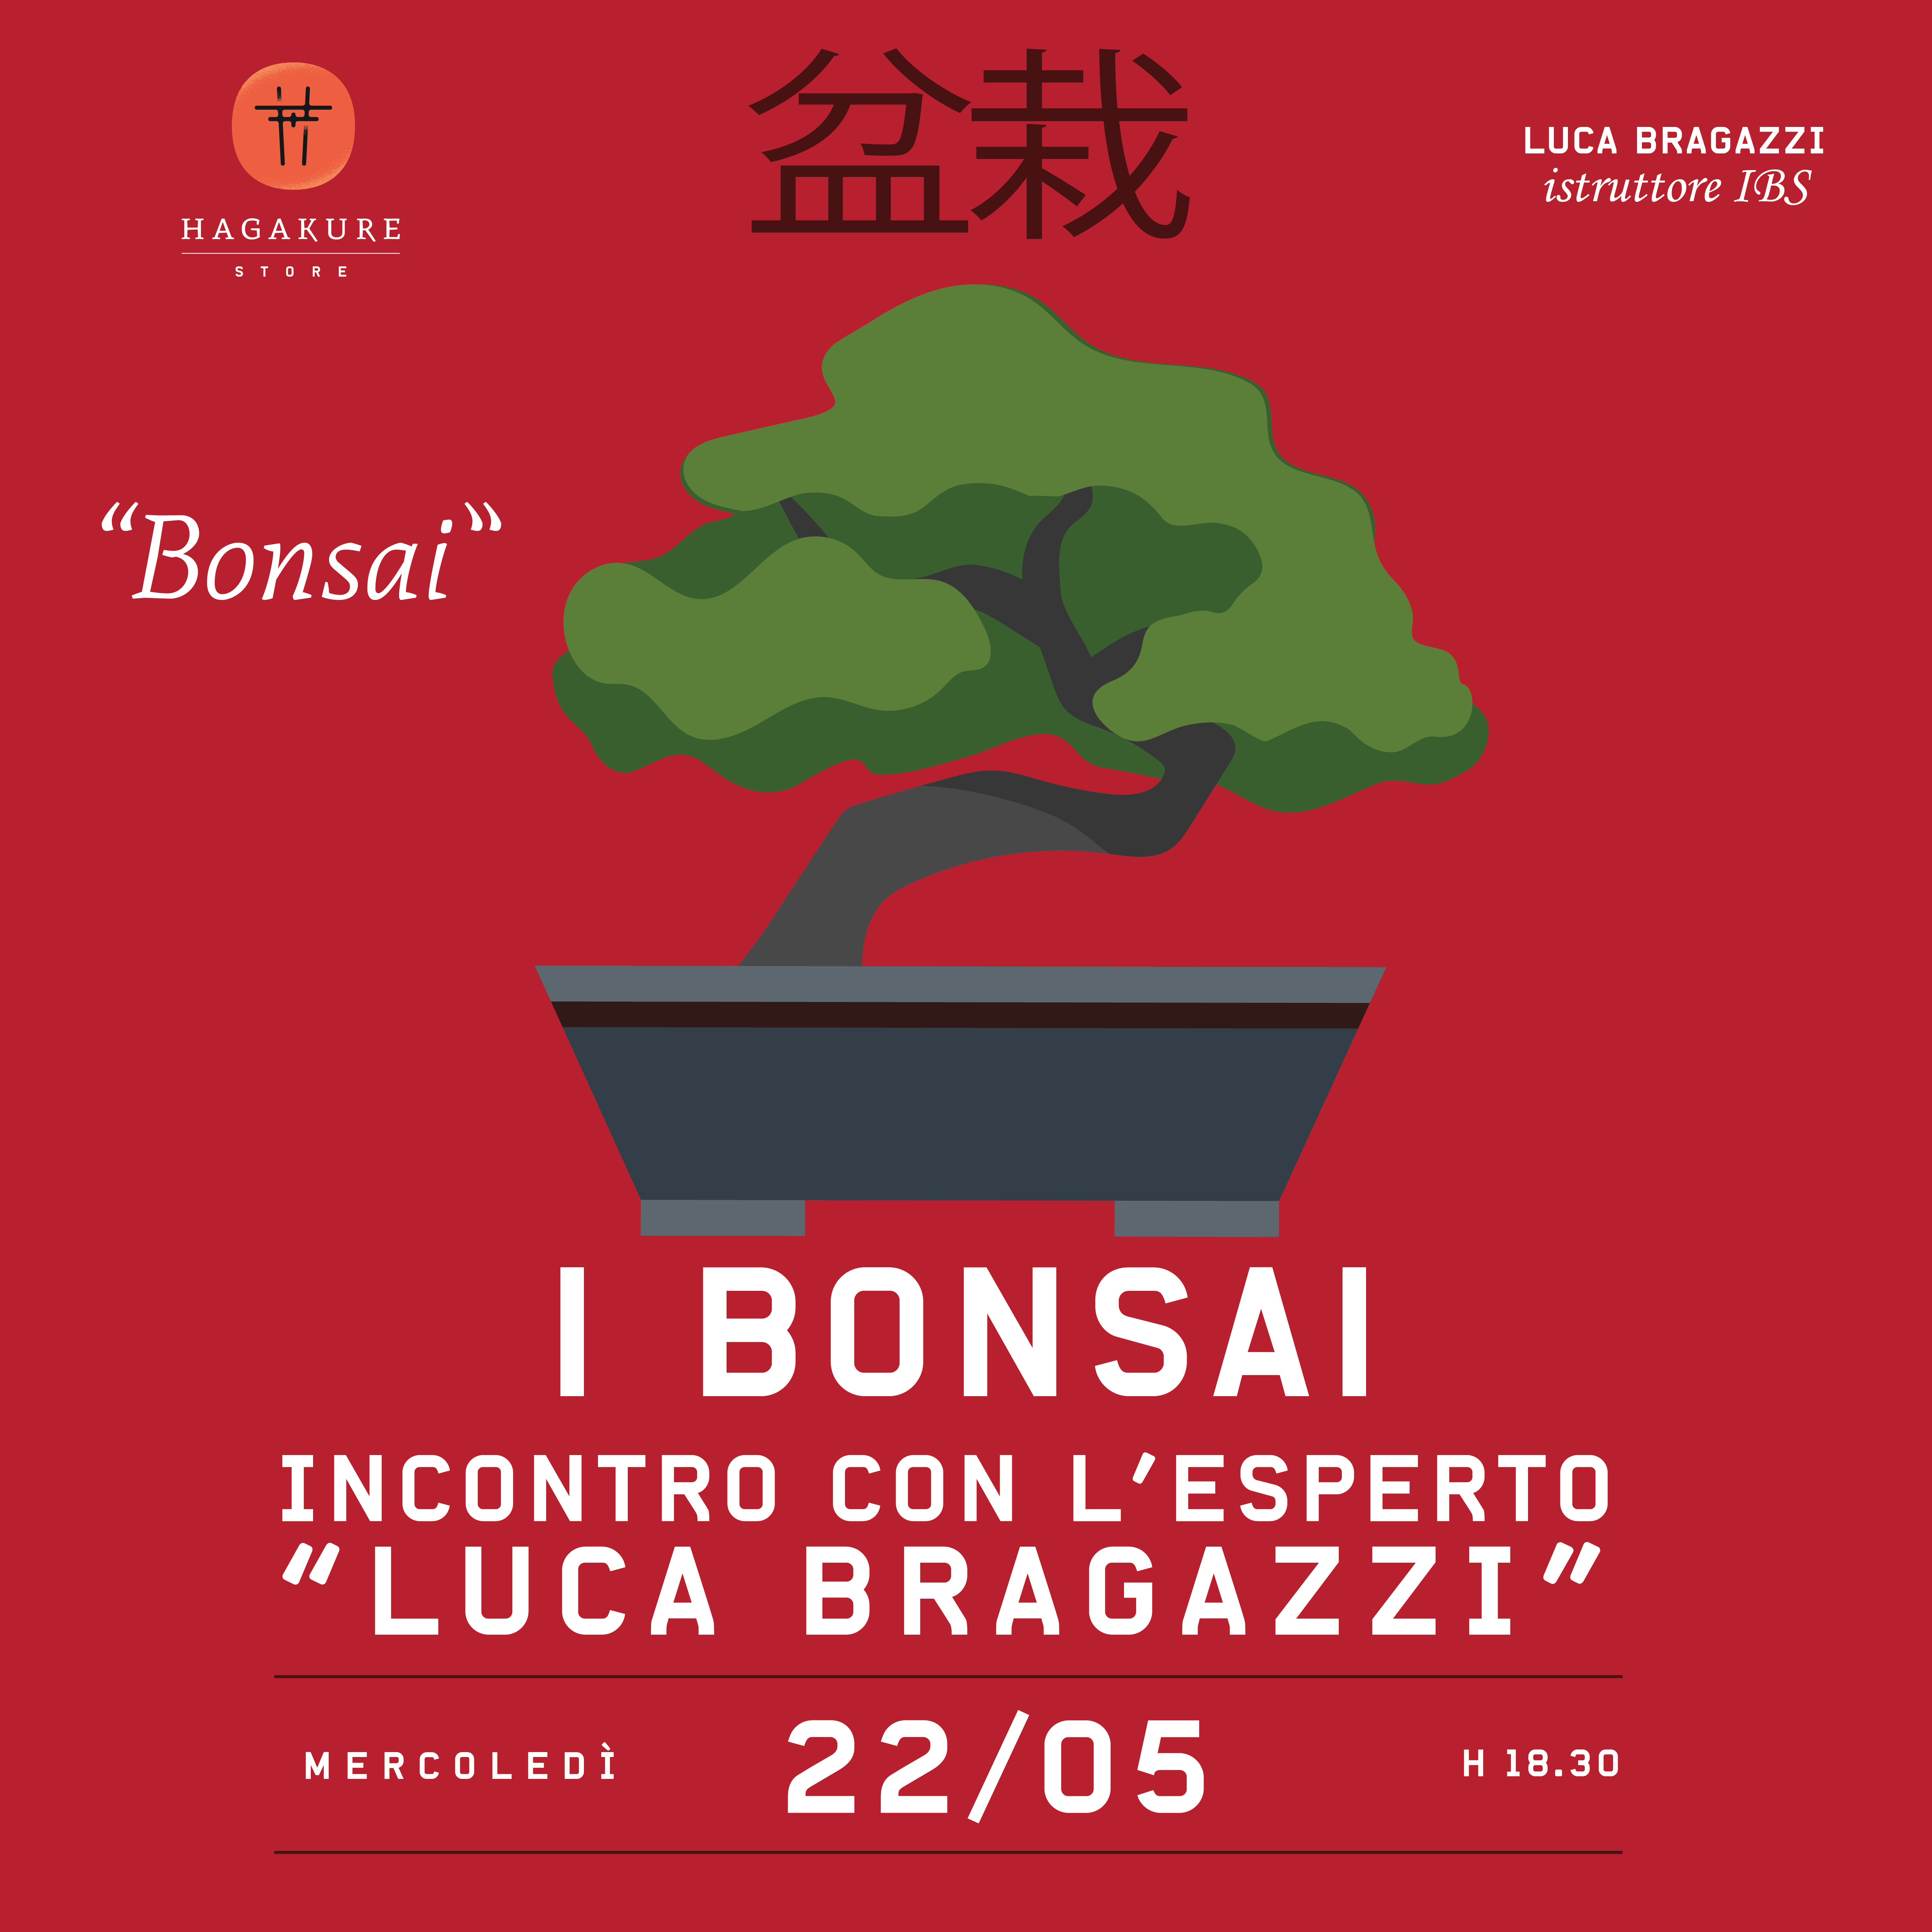 I bonsai - Incontro con l'esperto "Luca Bragazzi"